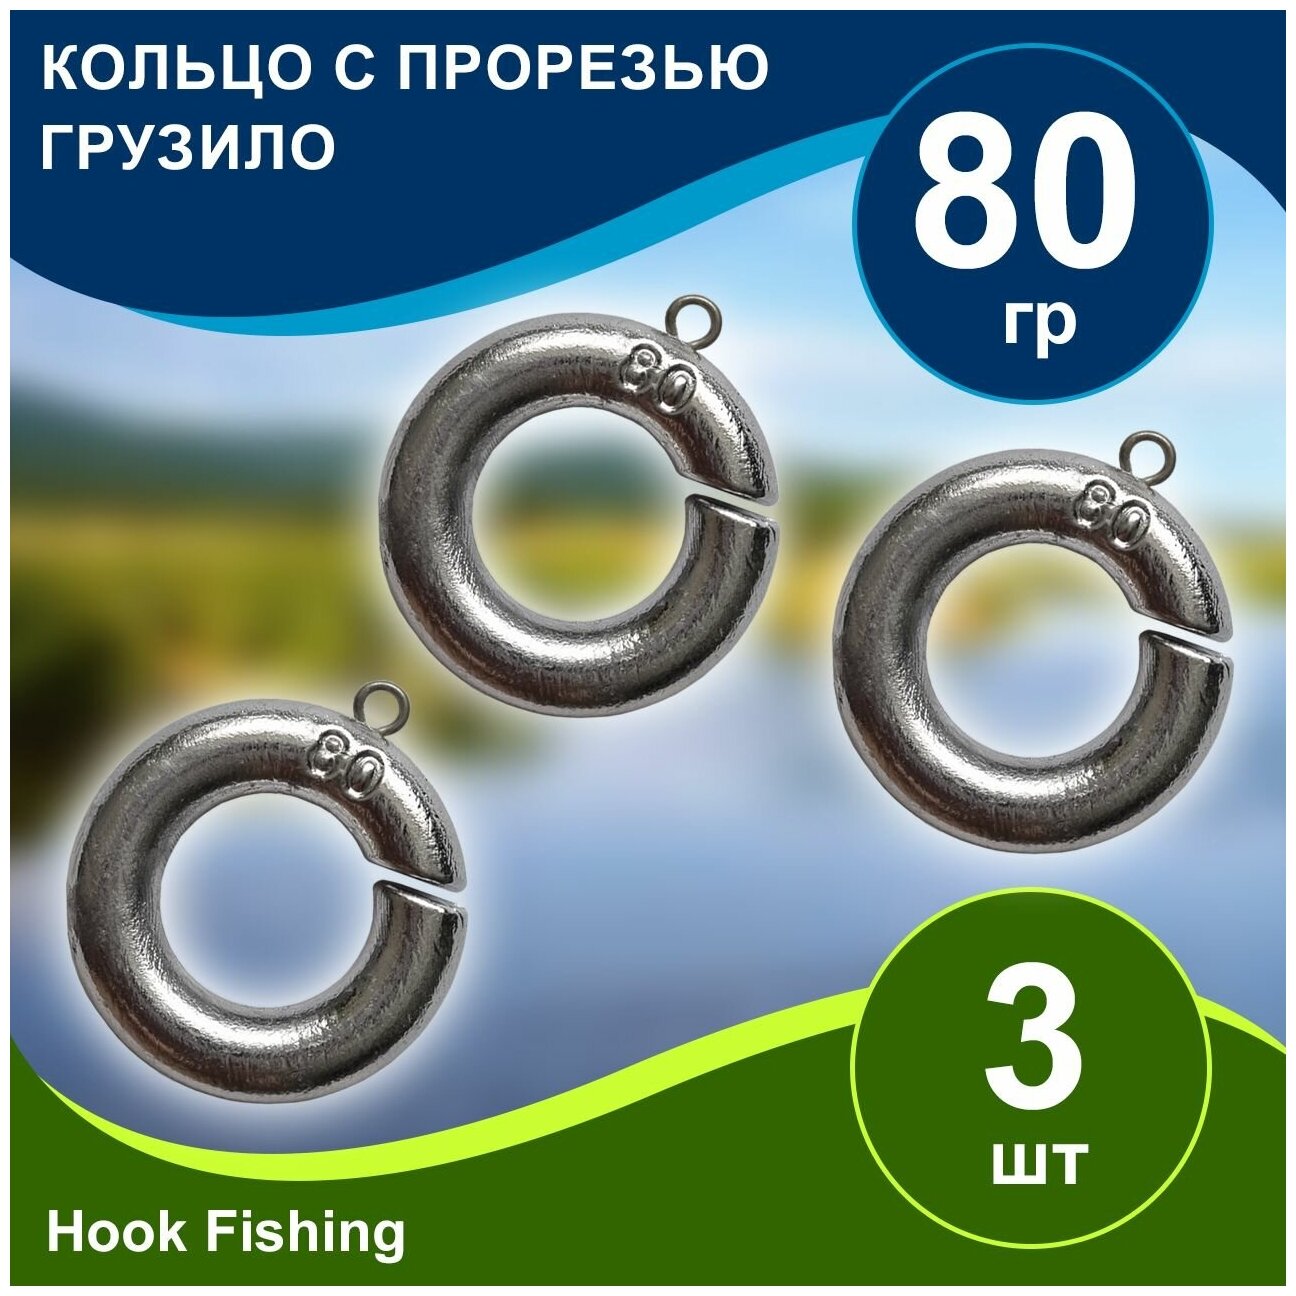 Груз рыболовный "Кольцо с прорезью" вес 80гр 3шт